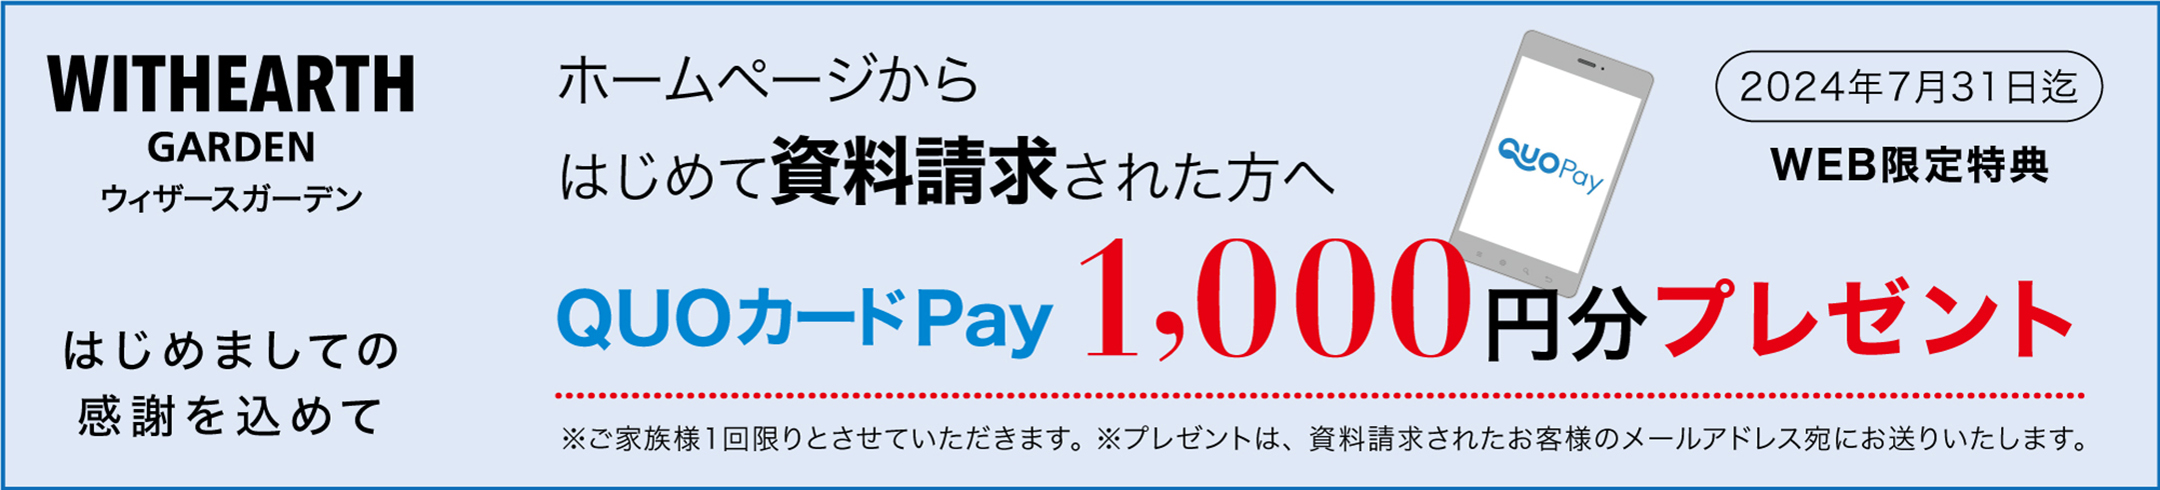 ［WEB限定特典］ホームページからはじめて資料請求された方へ、QUOカードPay1,000円分プレゼント（2024年7月31日）